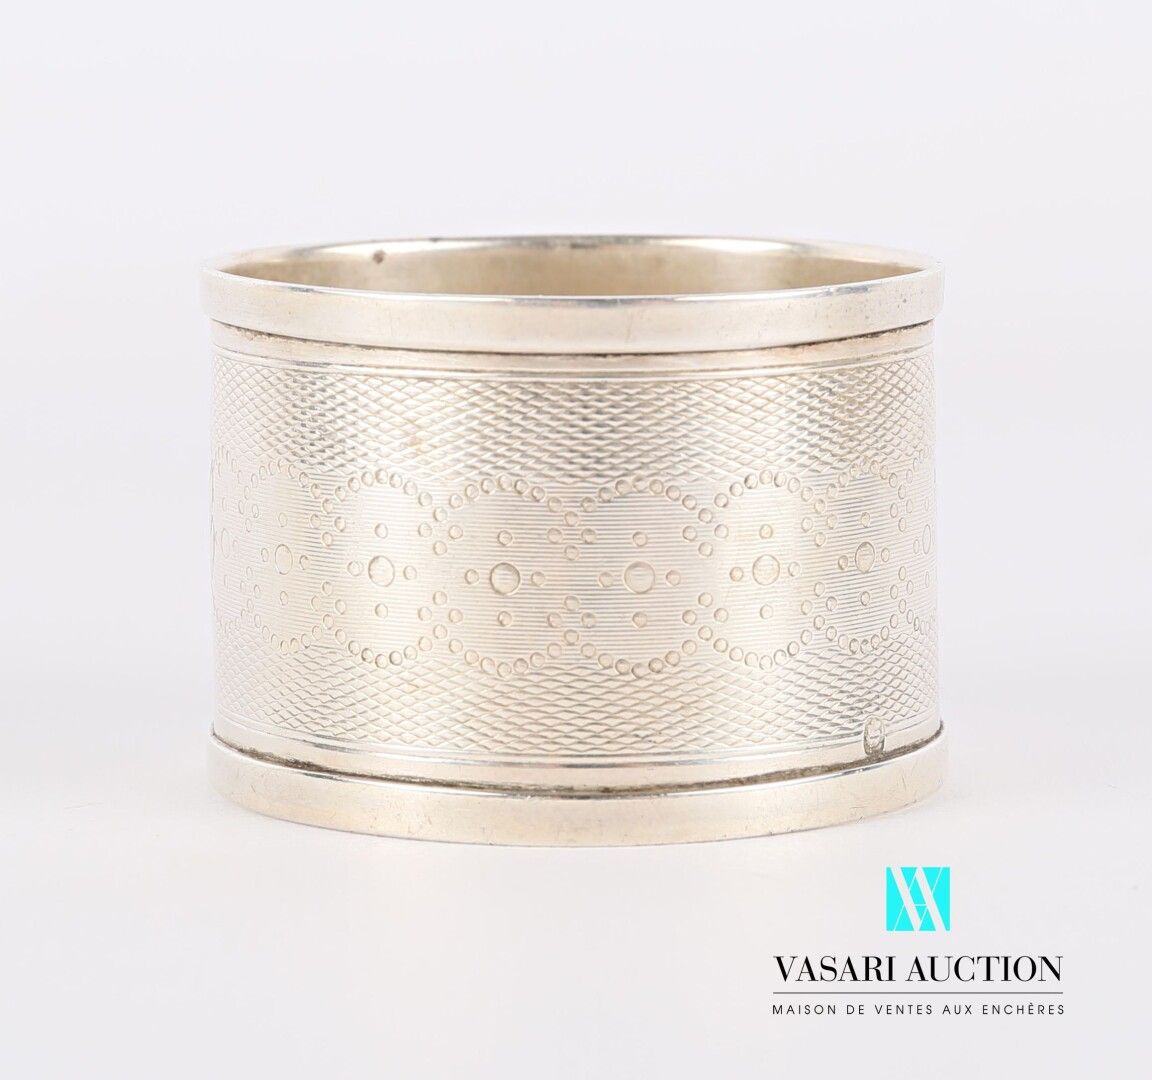 Null 银质餐巾环，装饰有一个雕刻的奖章，两侧是玑镂背景的叶子和交错的珍珠环。

重量：21.81克

高度：3.5厘米3,5 cm - 直径 : 5 cm